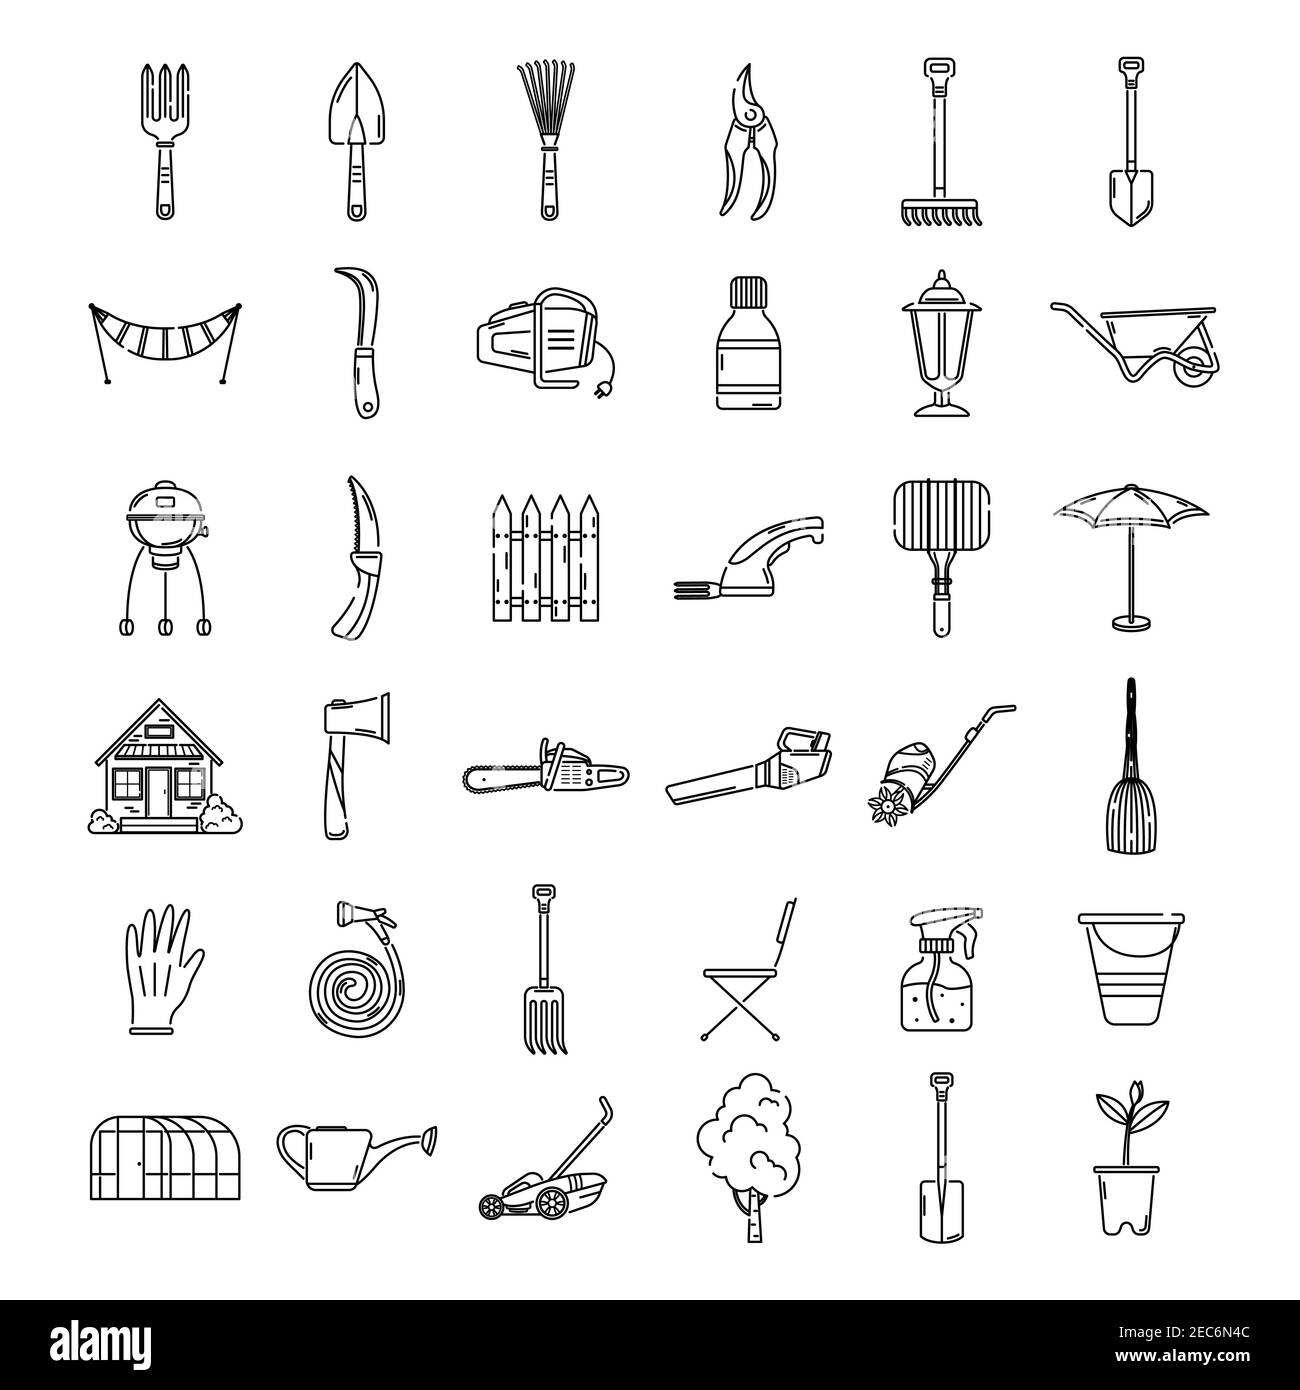 Eine Reihe von Garten-Ikonen, Werkzeuge, Erholung. Gartensymbole. Logo Lineart. Stock Vektor